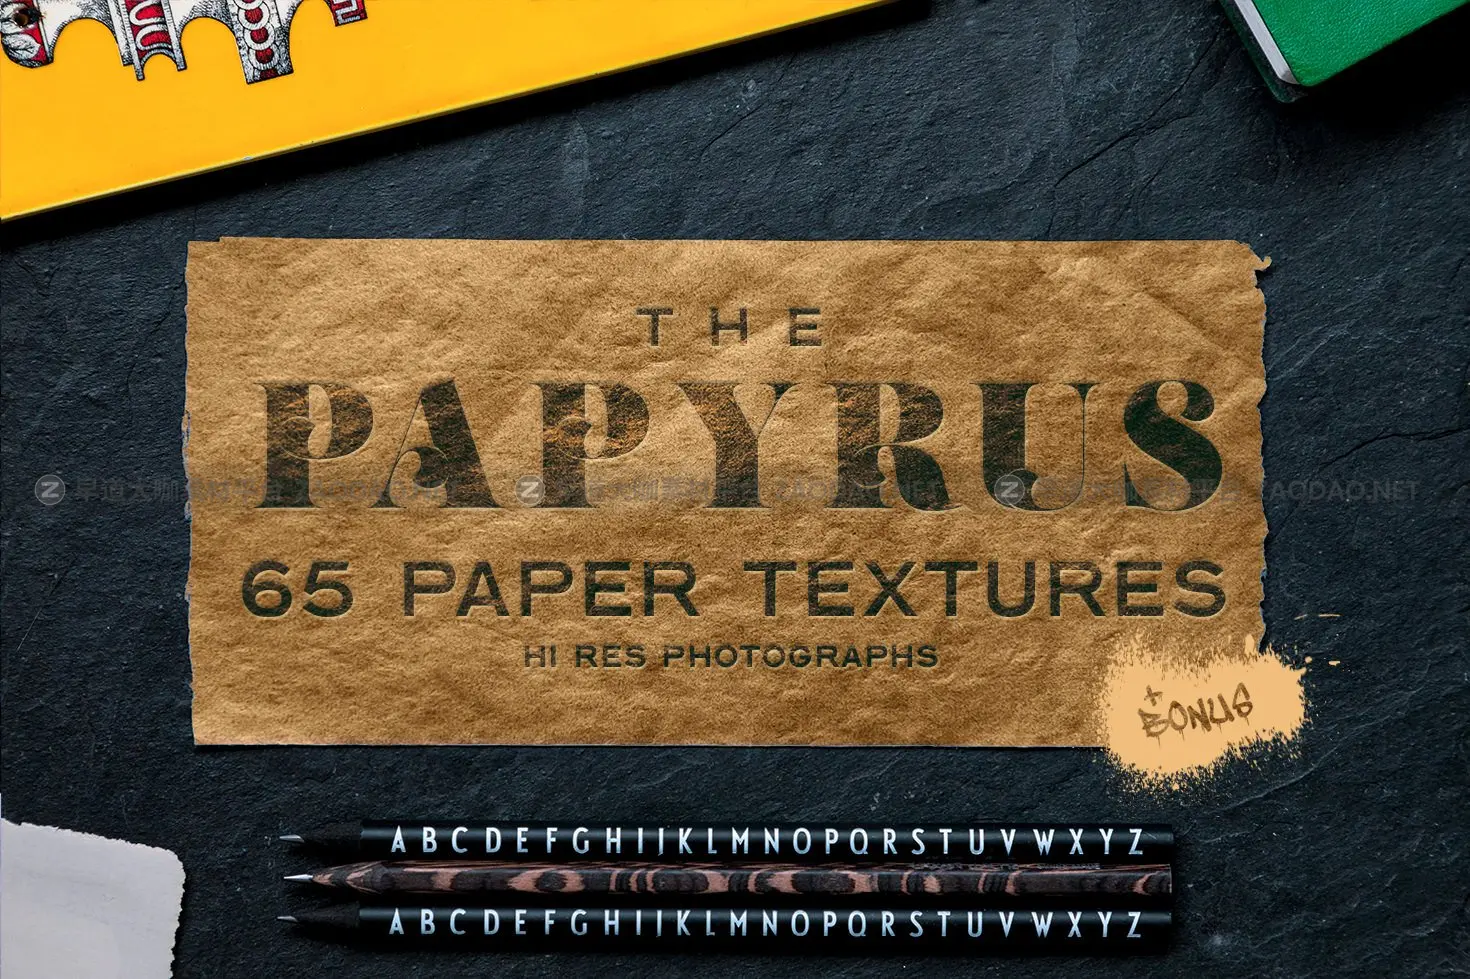 65款复古绘画莎草纸张纹理素材 The Papyrus – 65 Paper Textures插图